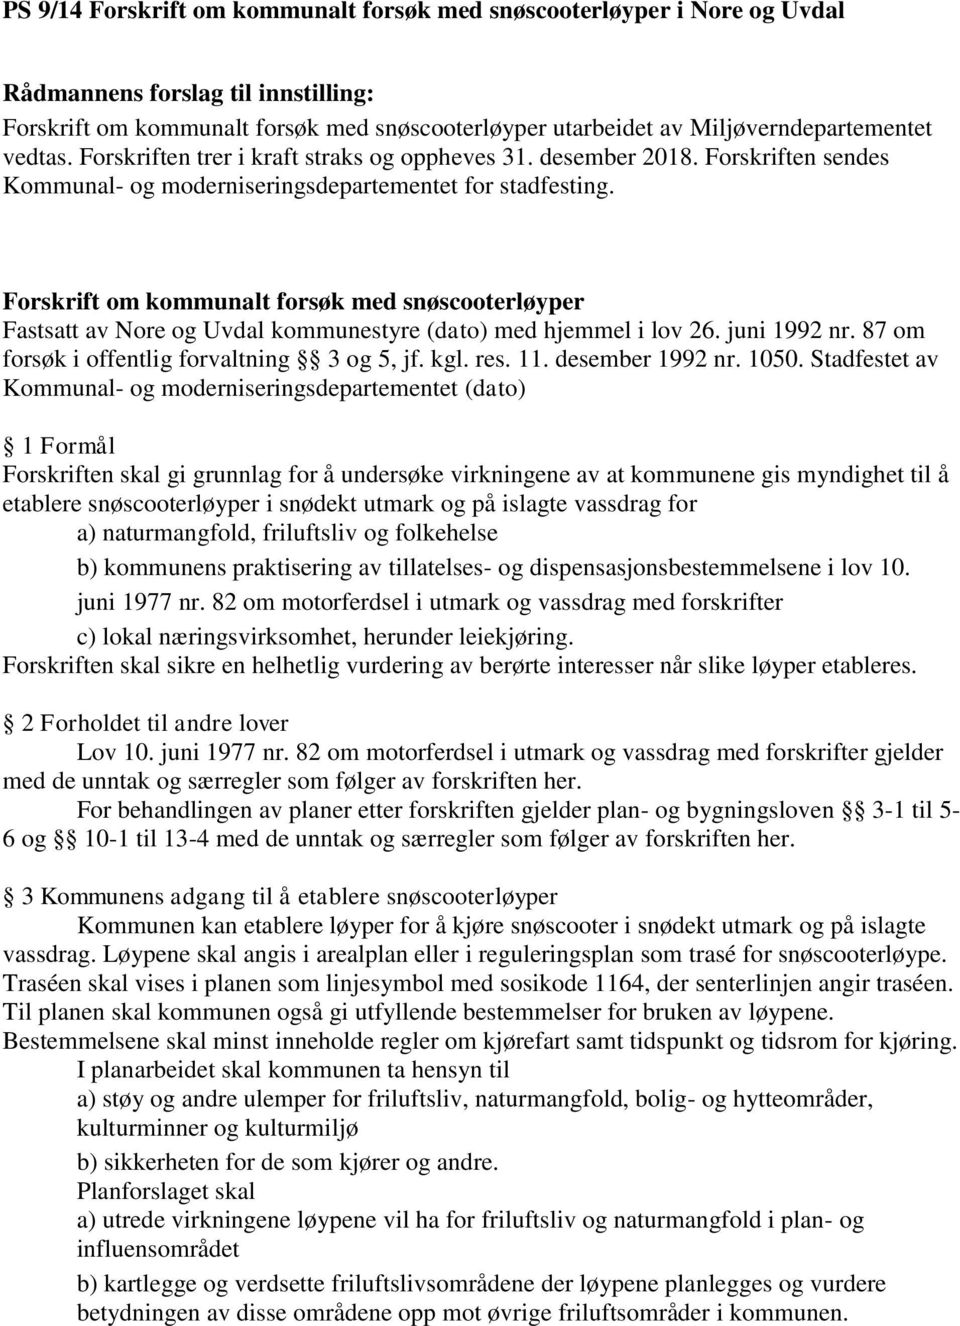 Forskrift om kommunalt forsøk med snøscooterløyper Fastsatt av Nore og Uvdal kommunestyre (dato) med hjemmel i lov 26. juni 1992 nr. 87 om forsøk i offentlig forvaltning 3 og 5, jf. kgl. res. 11.